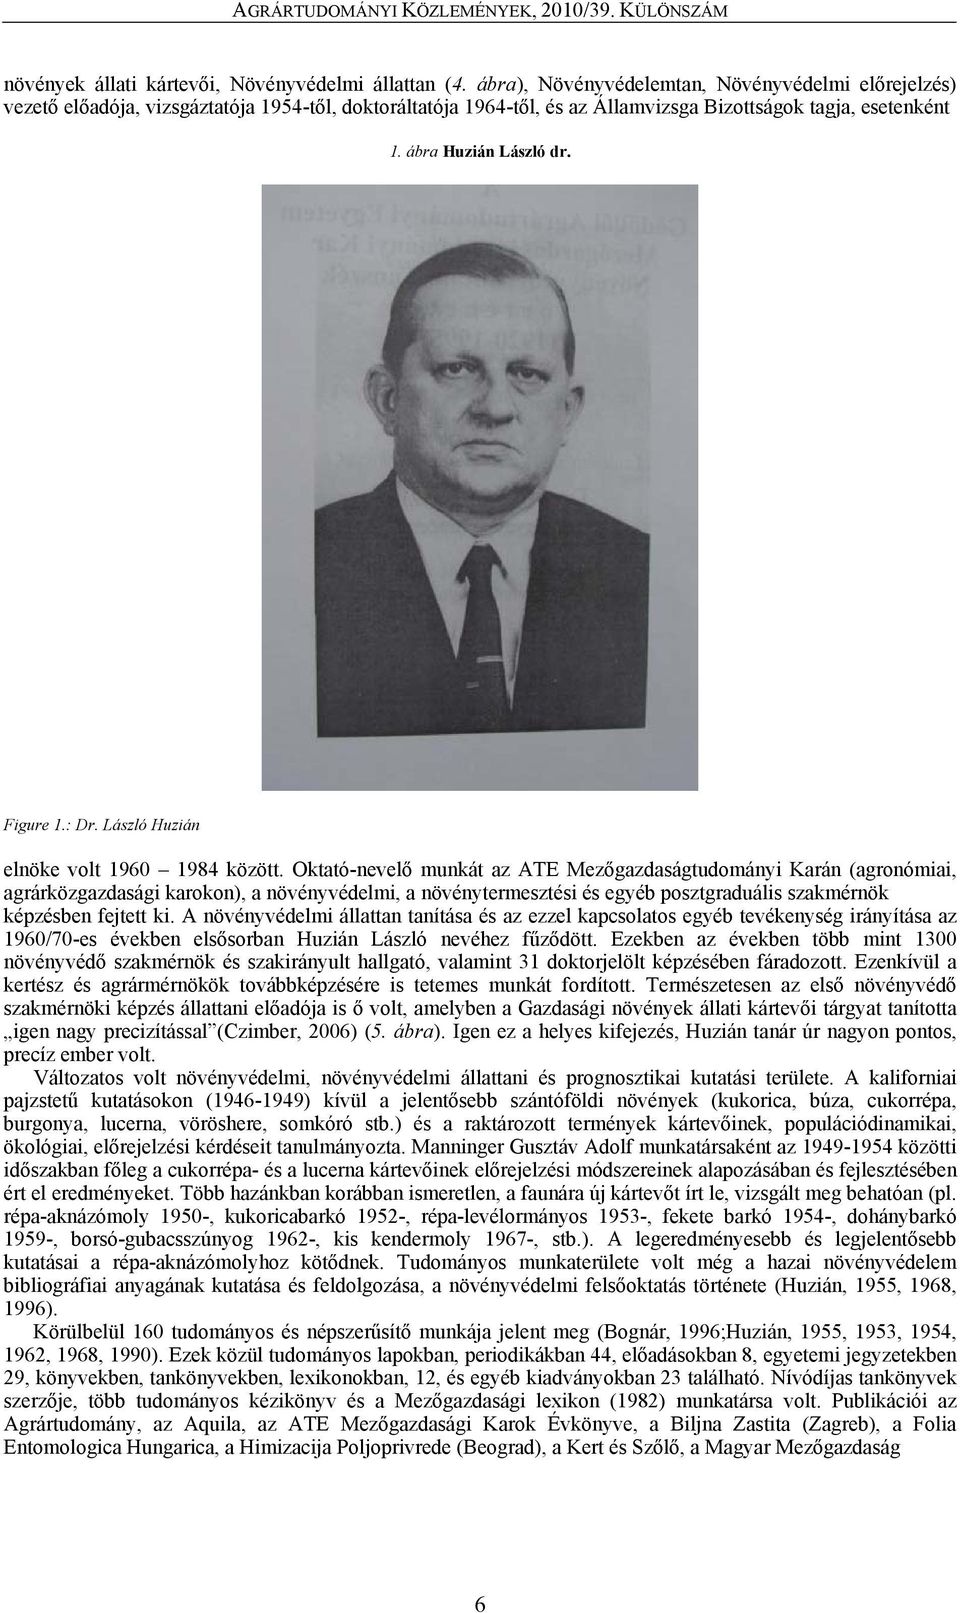 Figure 1.: Dr. László Huzián elnöke volt 1960 1984 között.